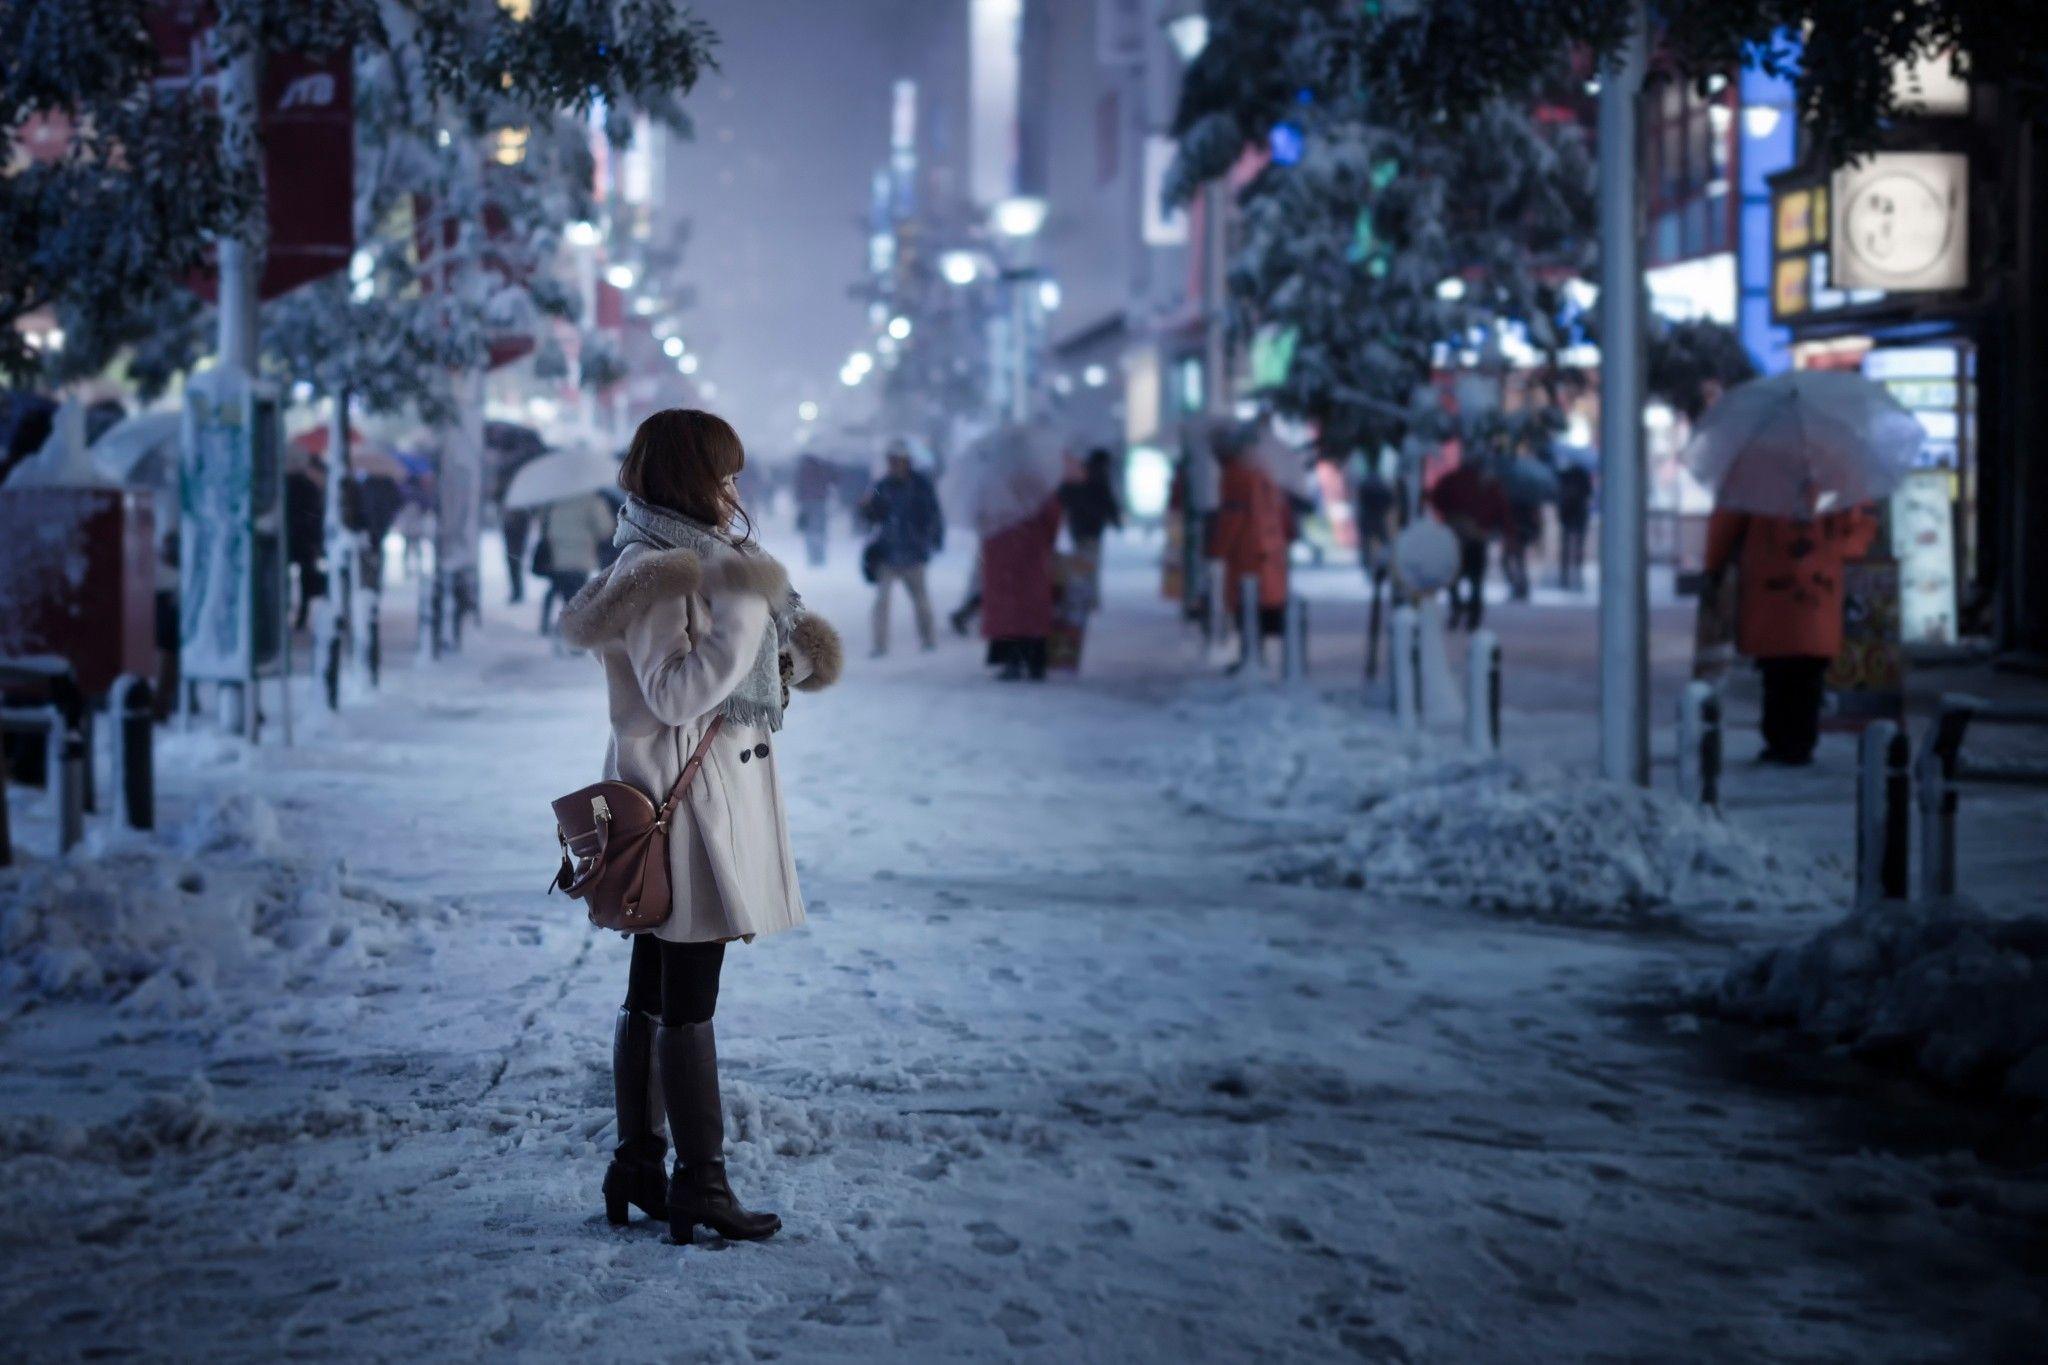 Бредя по улице. Зимняя улица. Люди в городе зимой. Зимний город. Девушка в заснеженном городе.